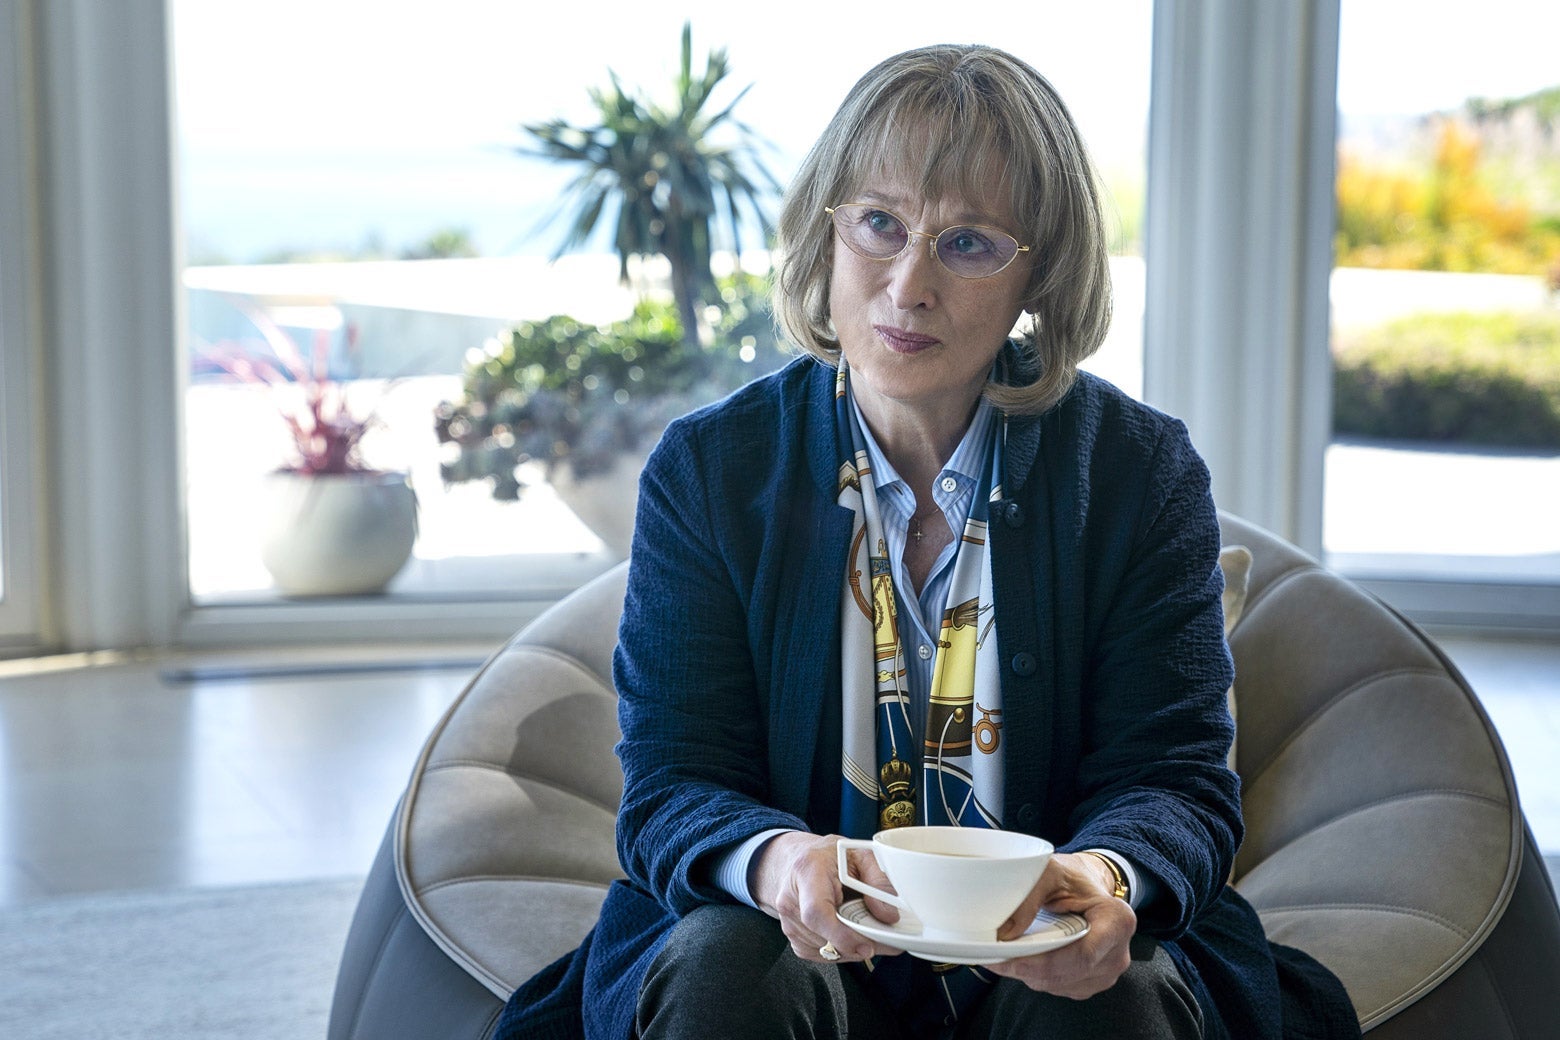 Meryl Streep as Mary Louise, holding a tea cup and saucer.